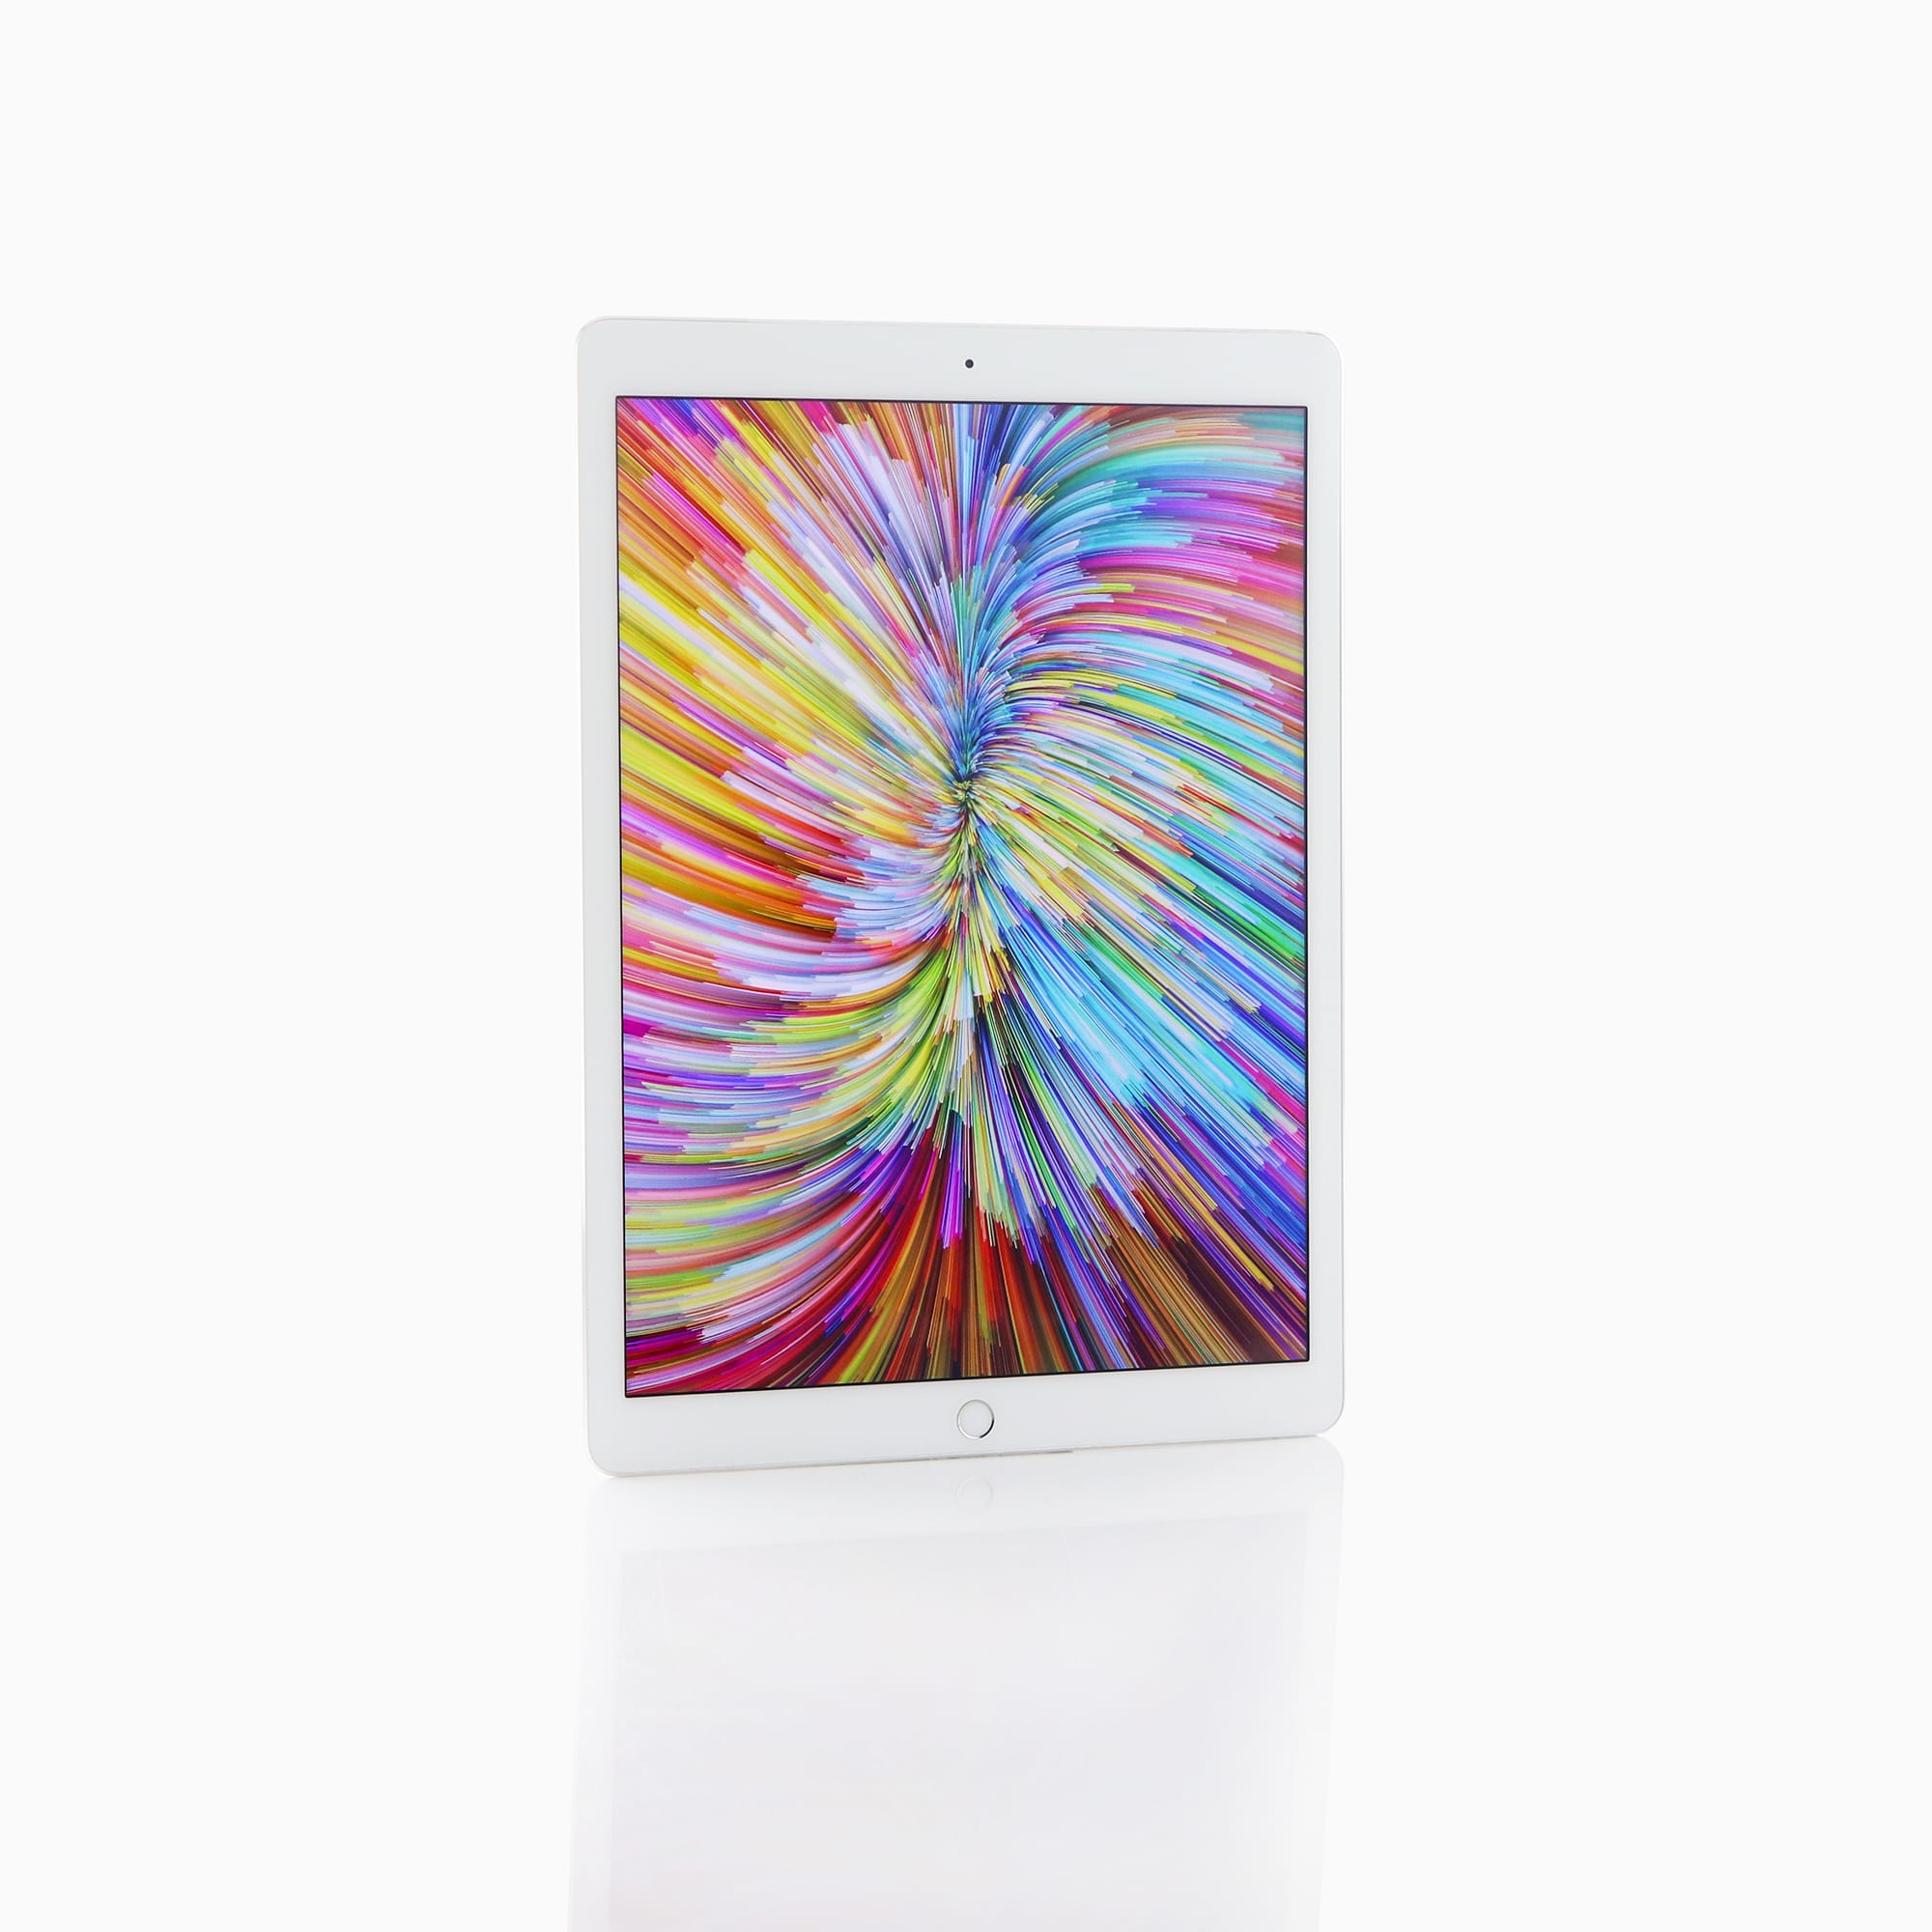 1 x iPad Pro (12.9-inch) (Wi-Fi + Cellular) Silver